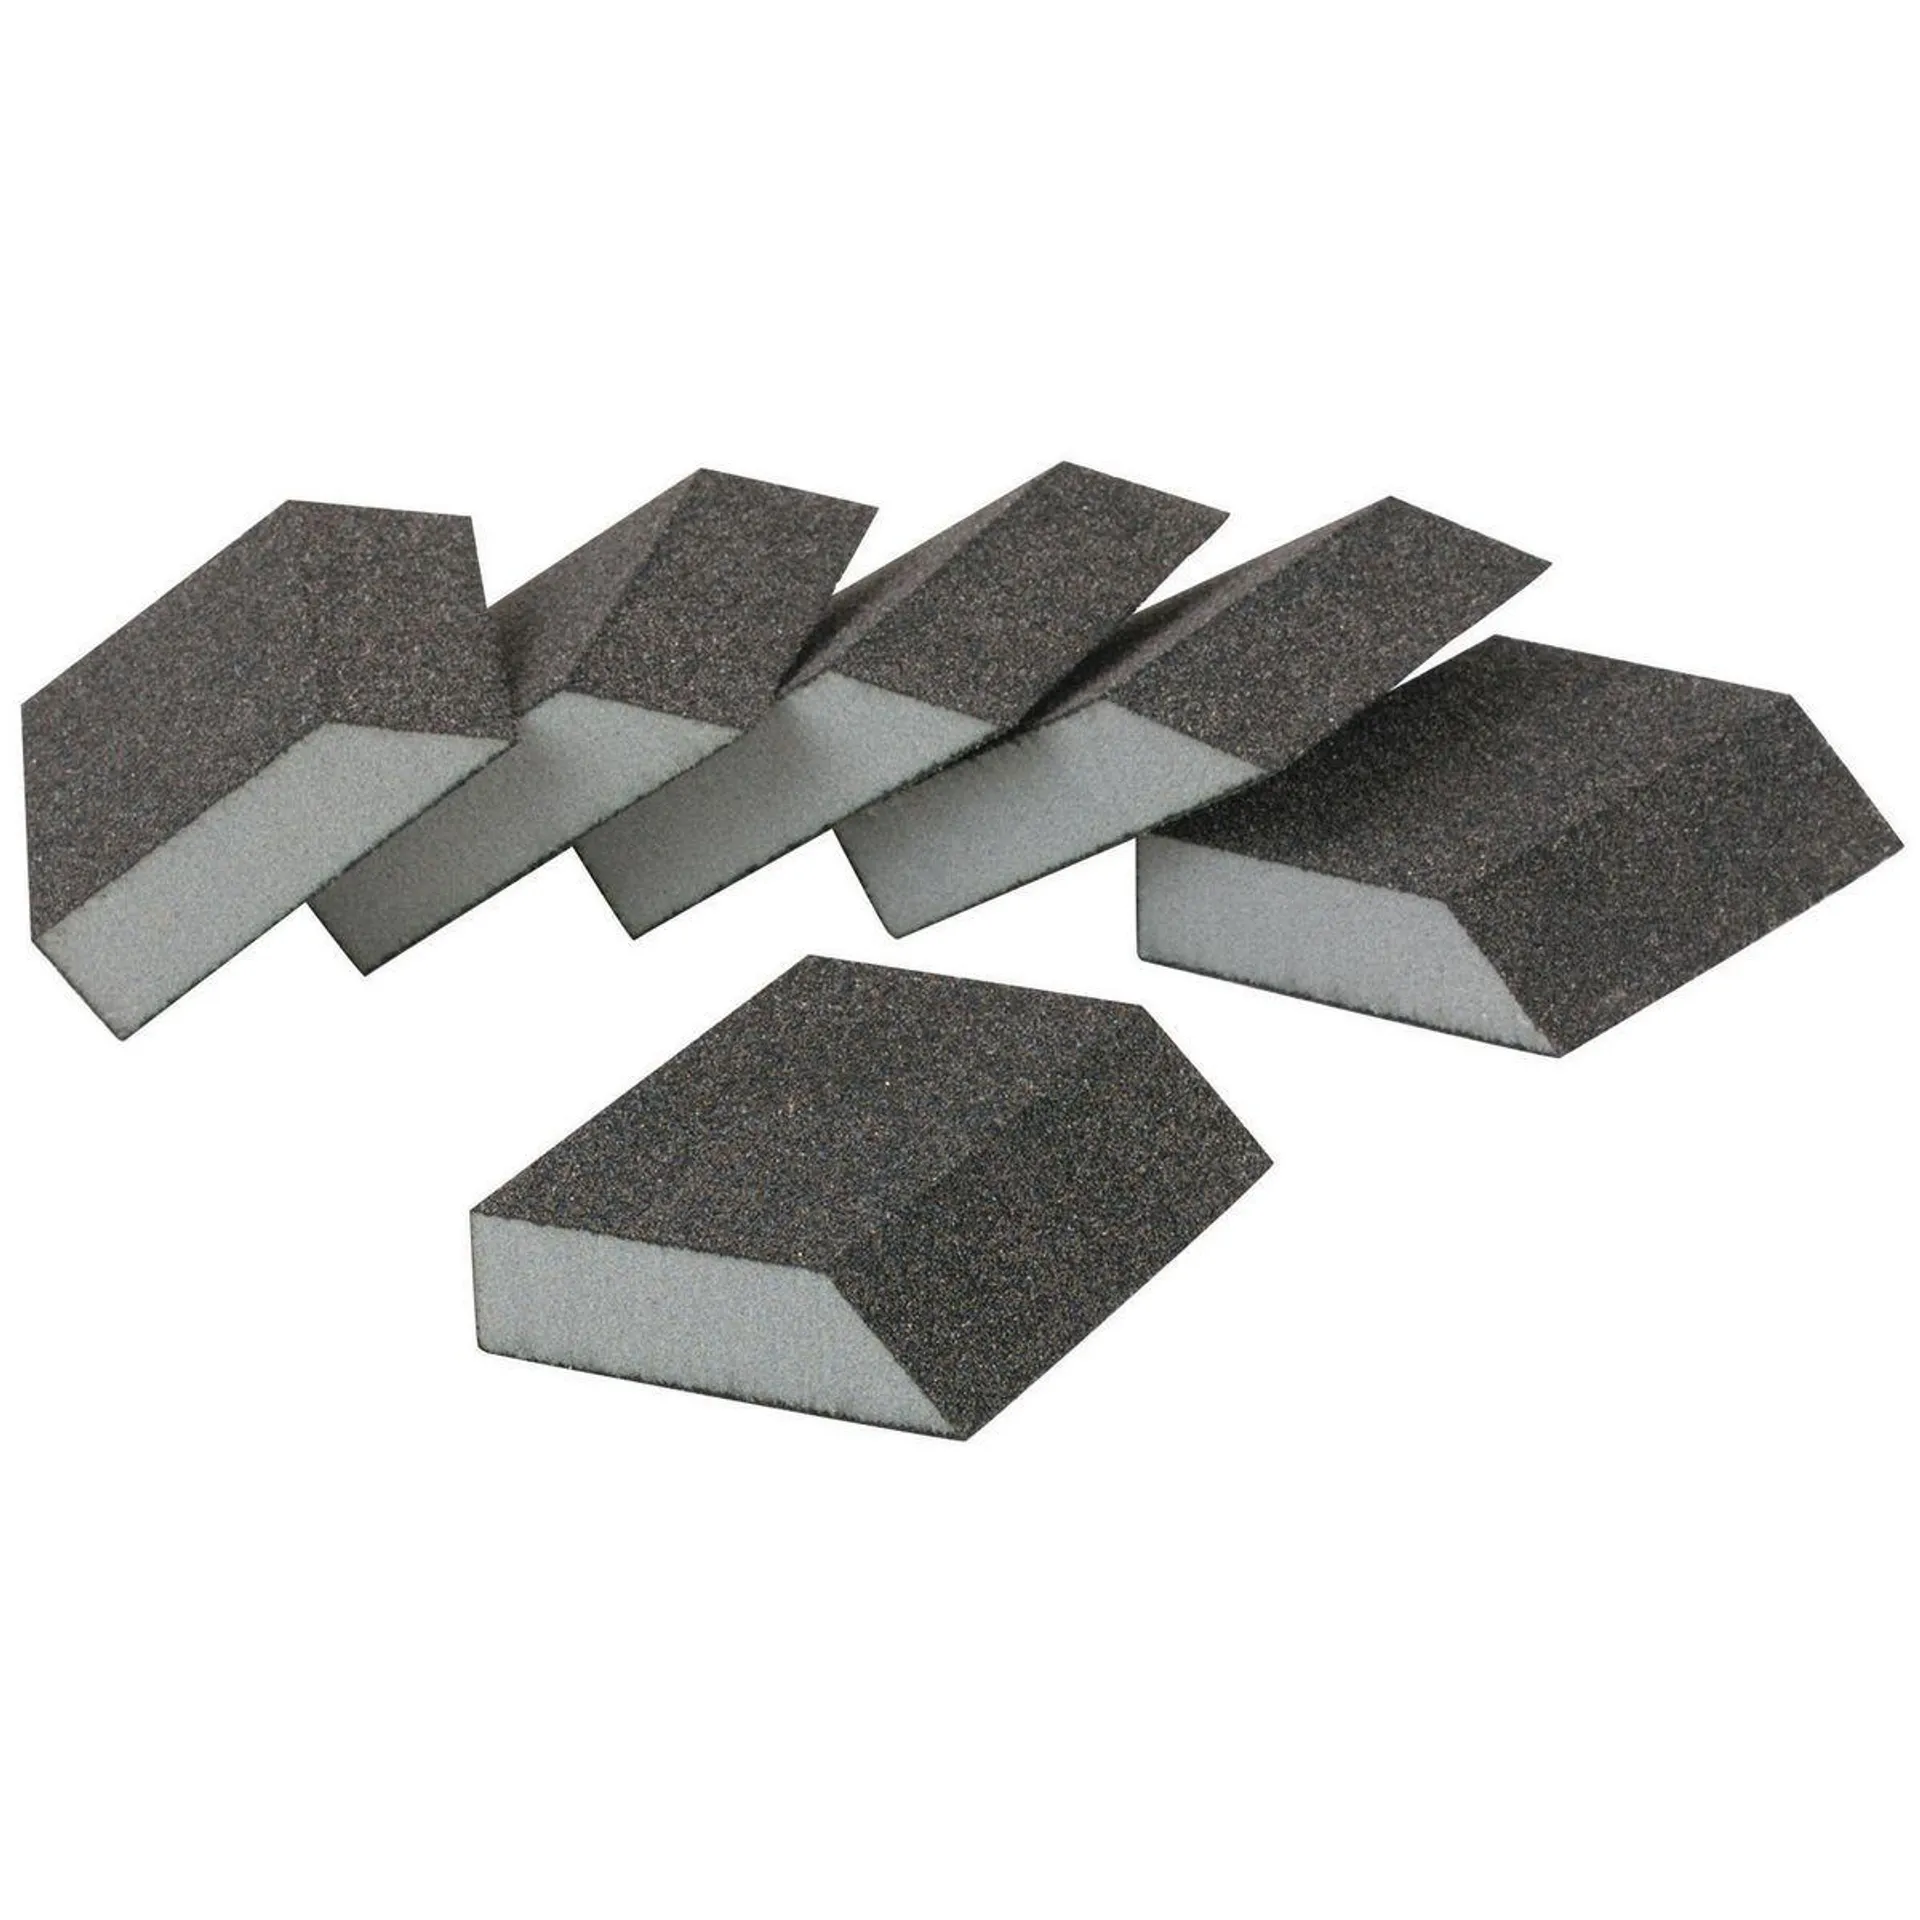 Aluminum Oxide Angled Sanding Sponges - Medium Grade, 6 Pack